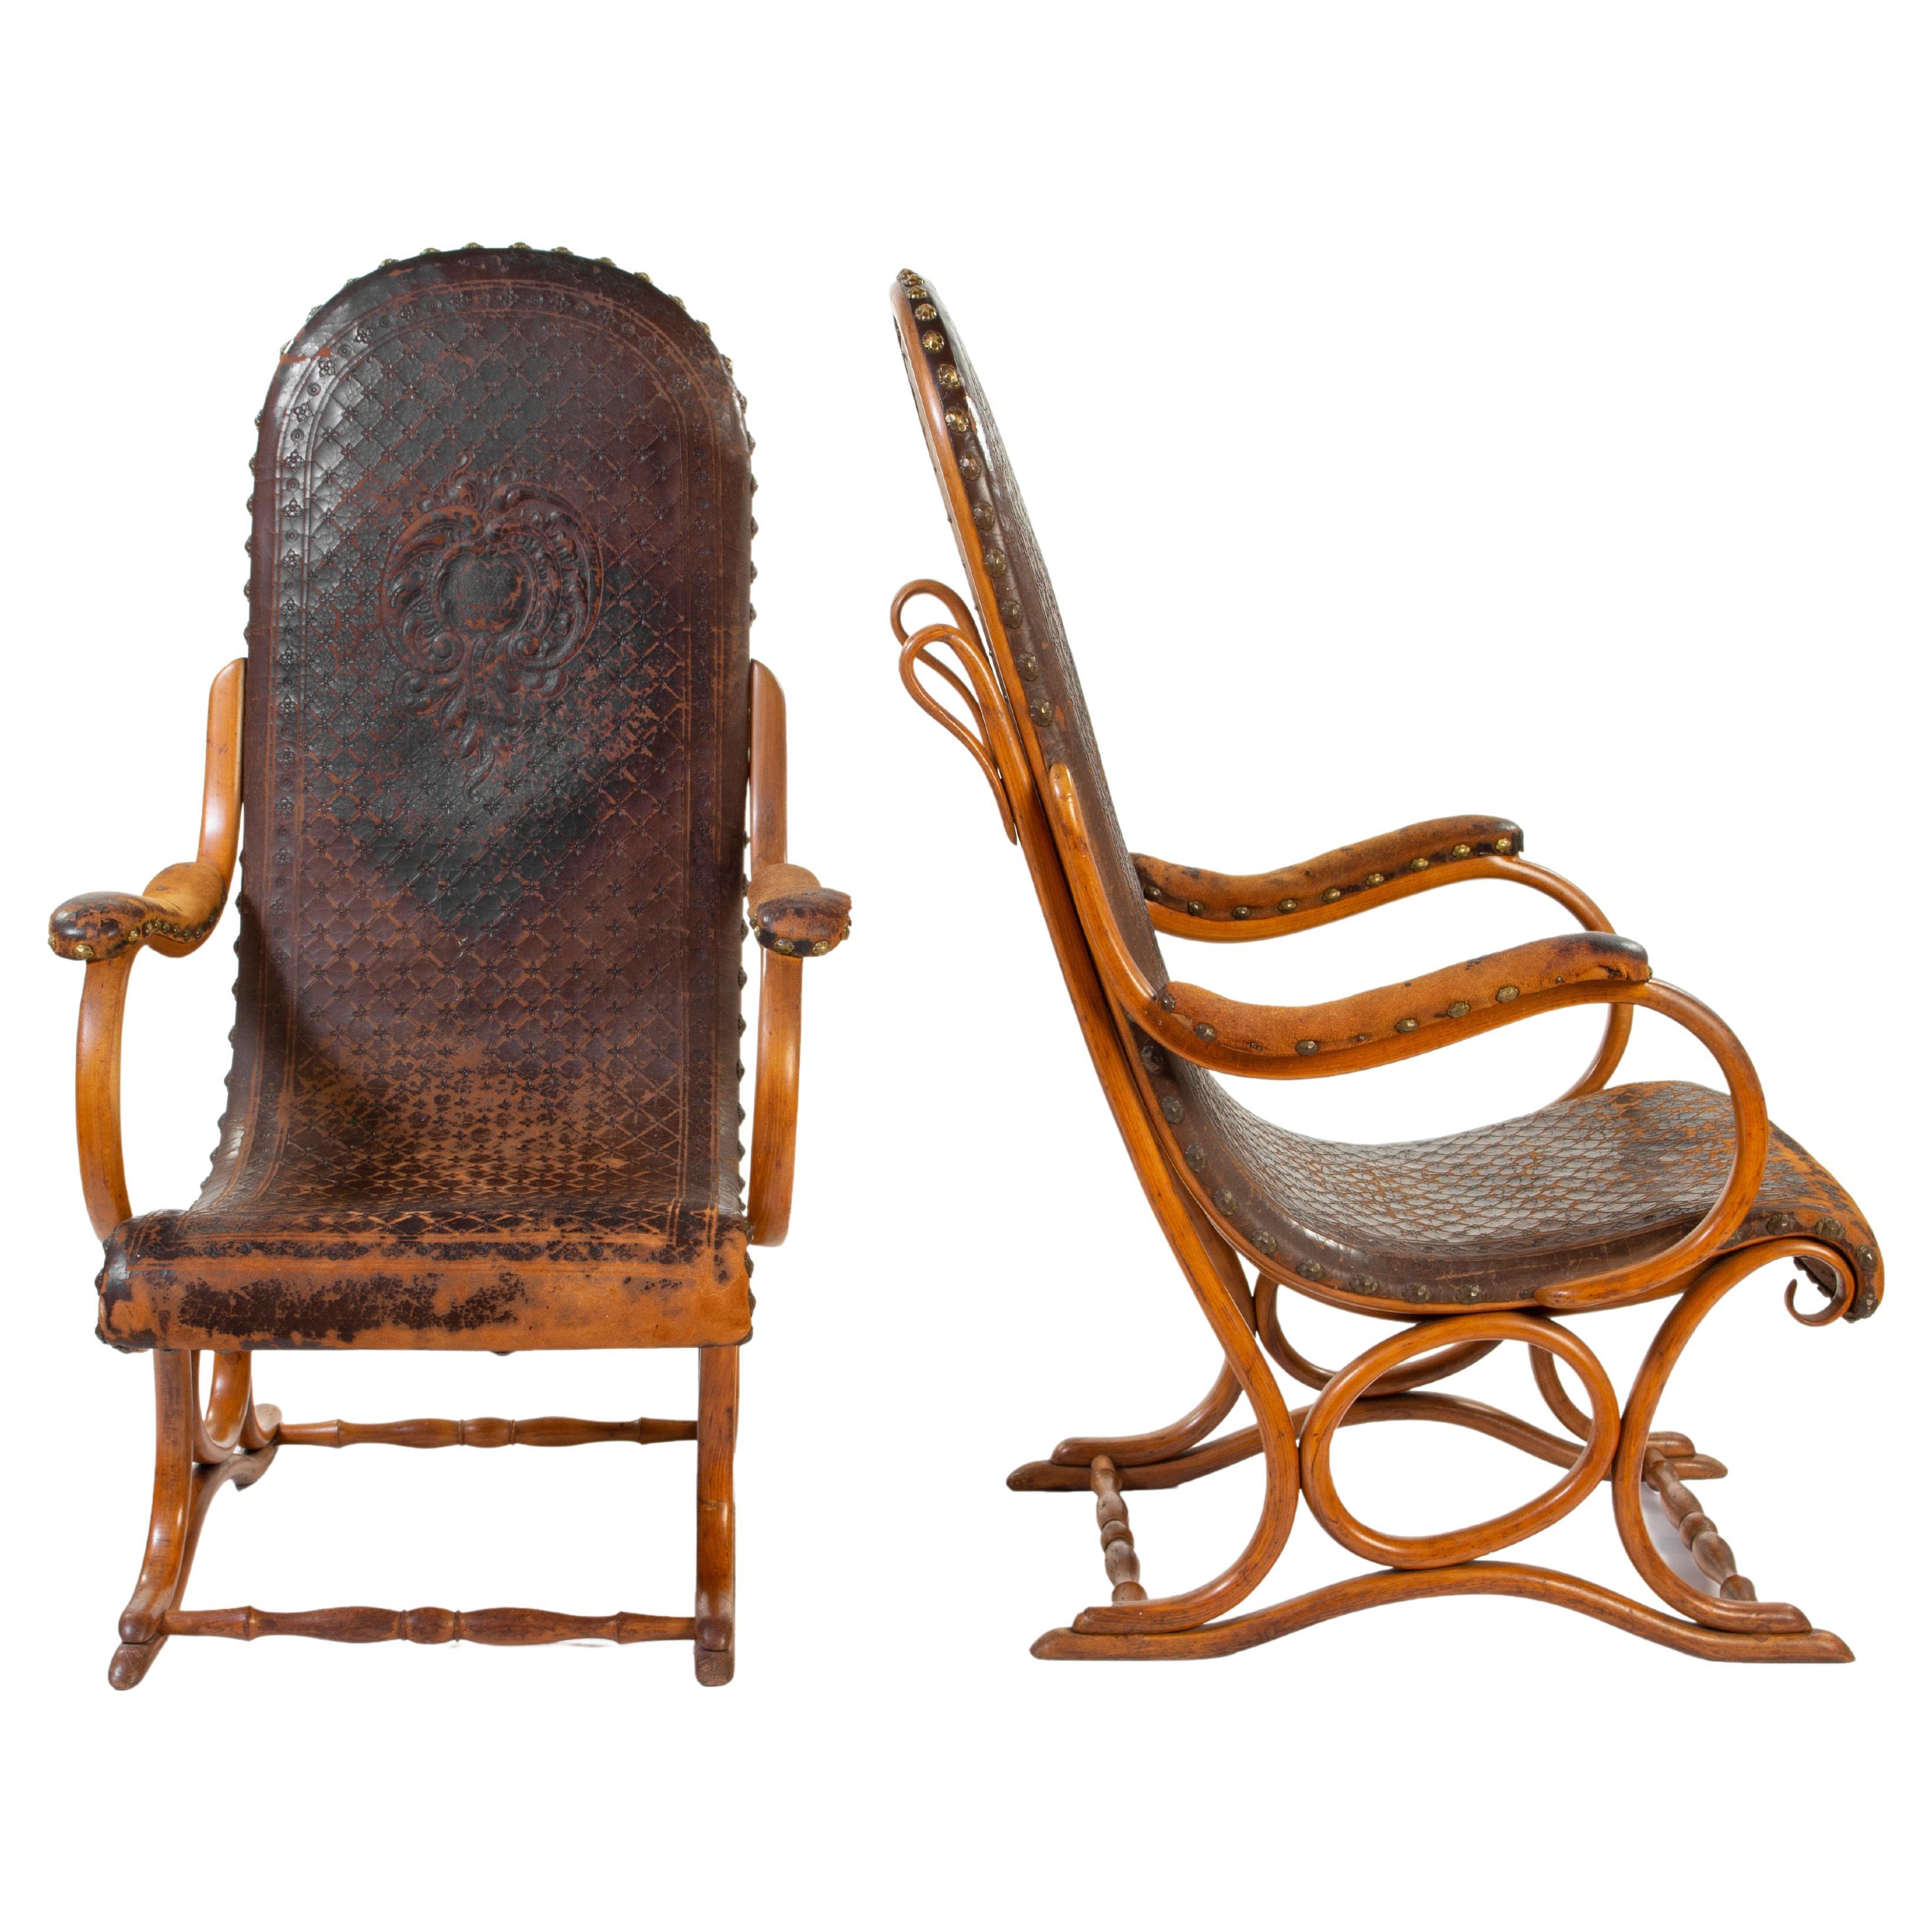 Paire de fauteuils en bois cintré, modèle n° 1, conçus par Gebrder Thonet vers 1900